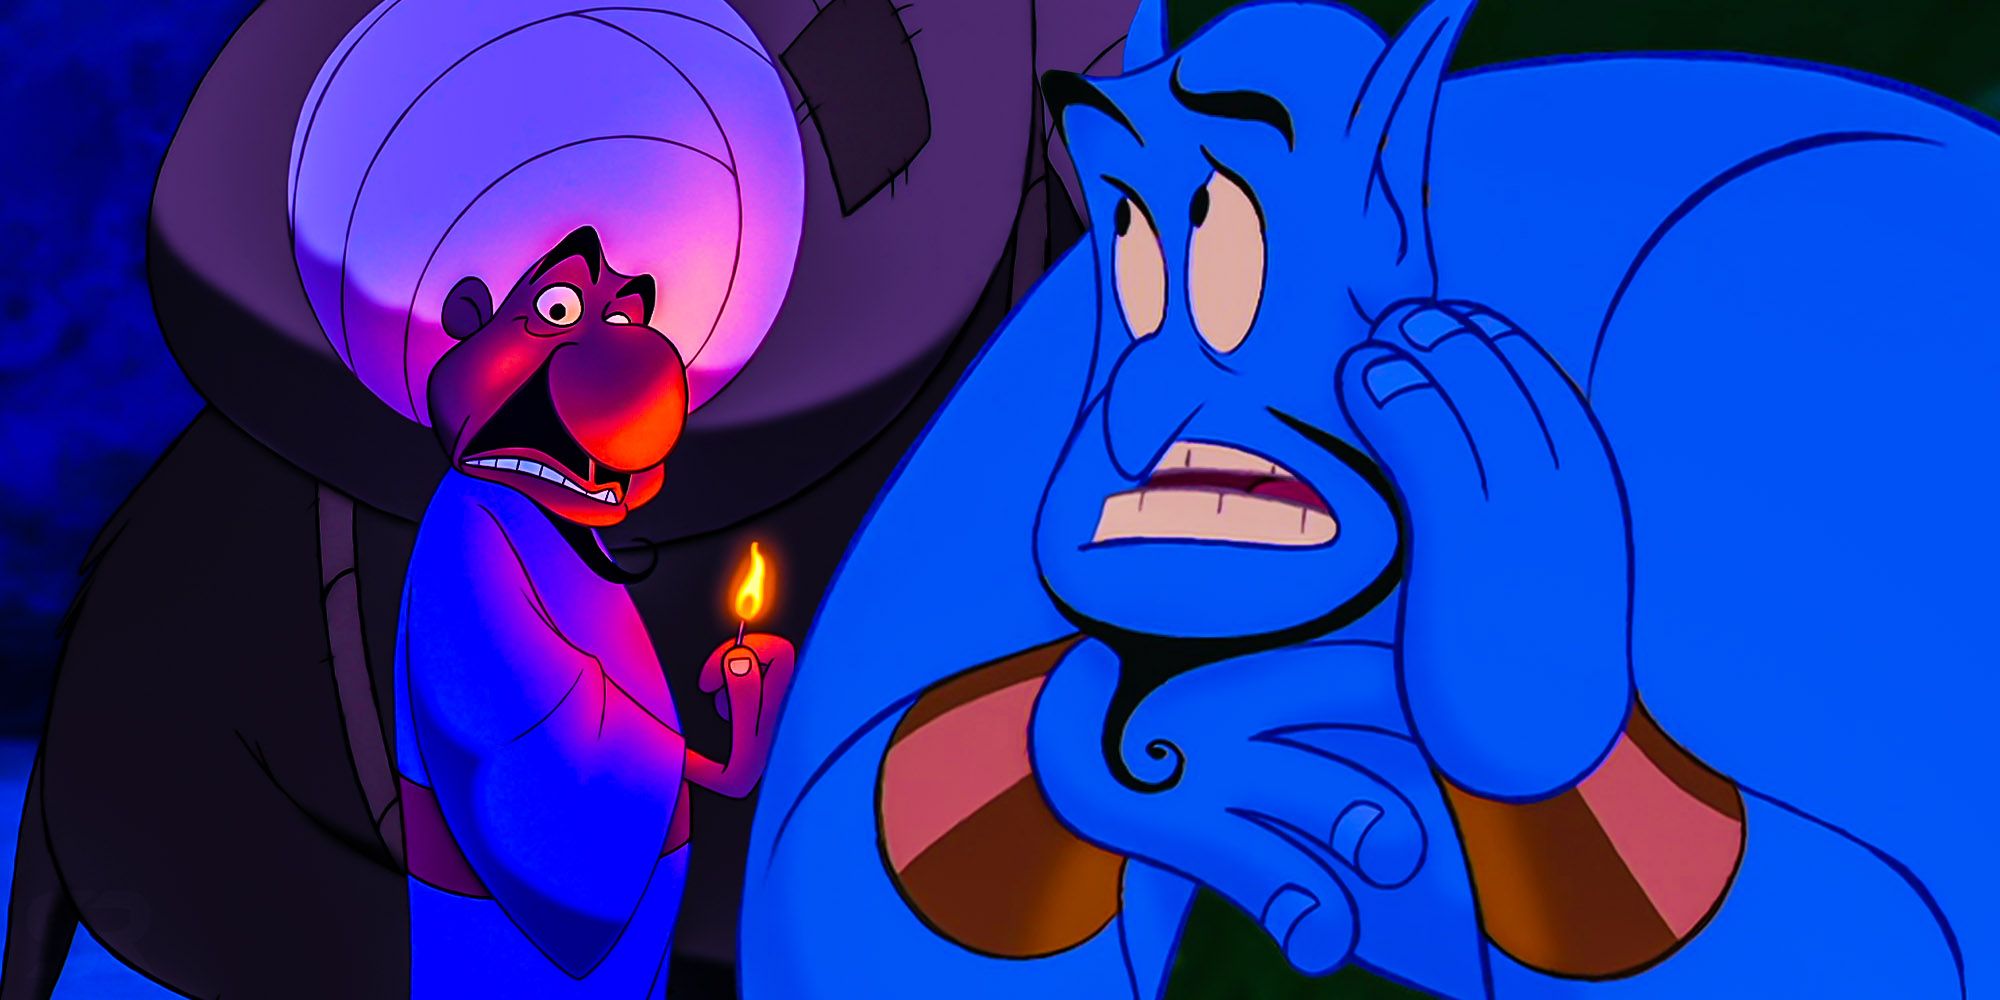 Aladdin' Genie